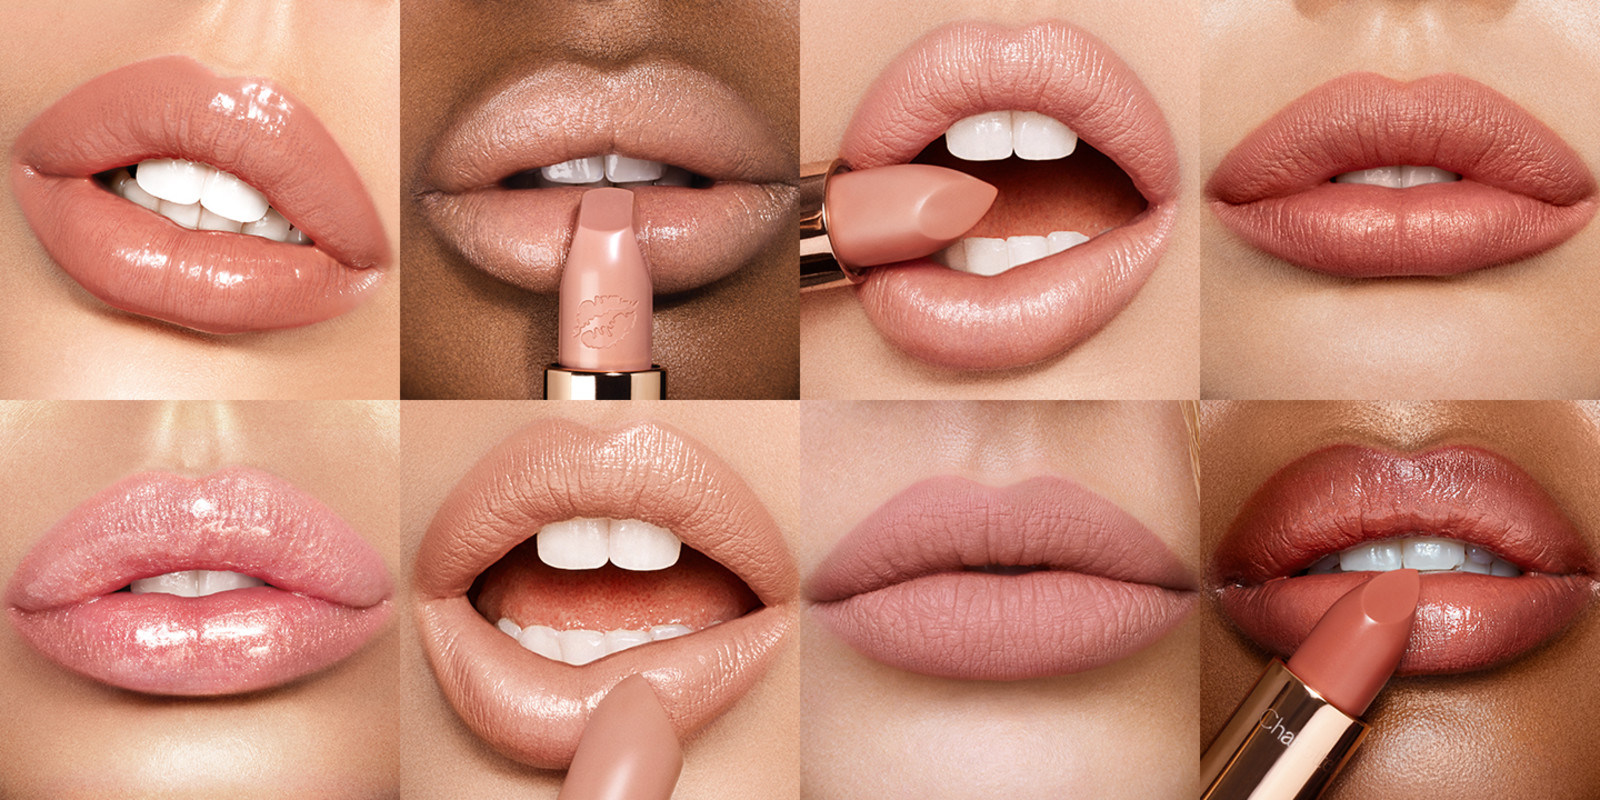 Charlotte Tilbury Hot Lips 2